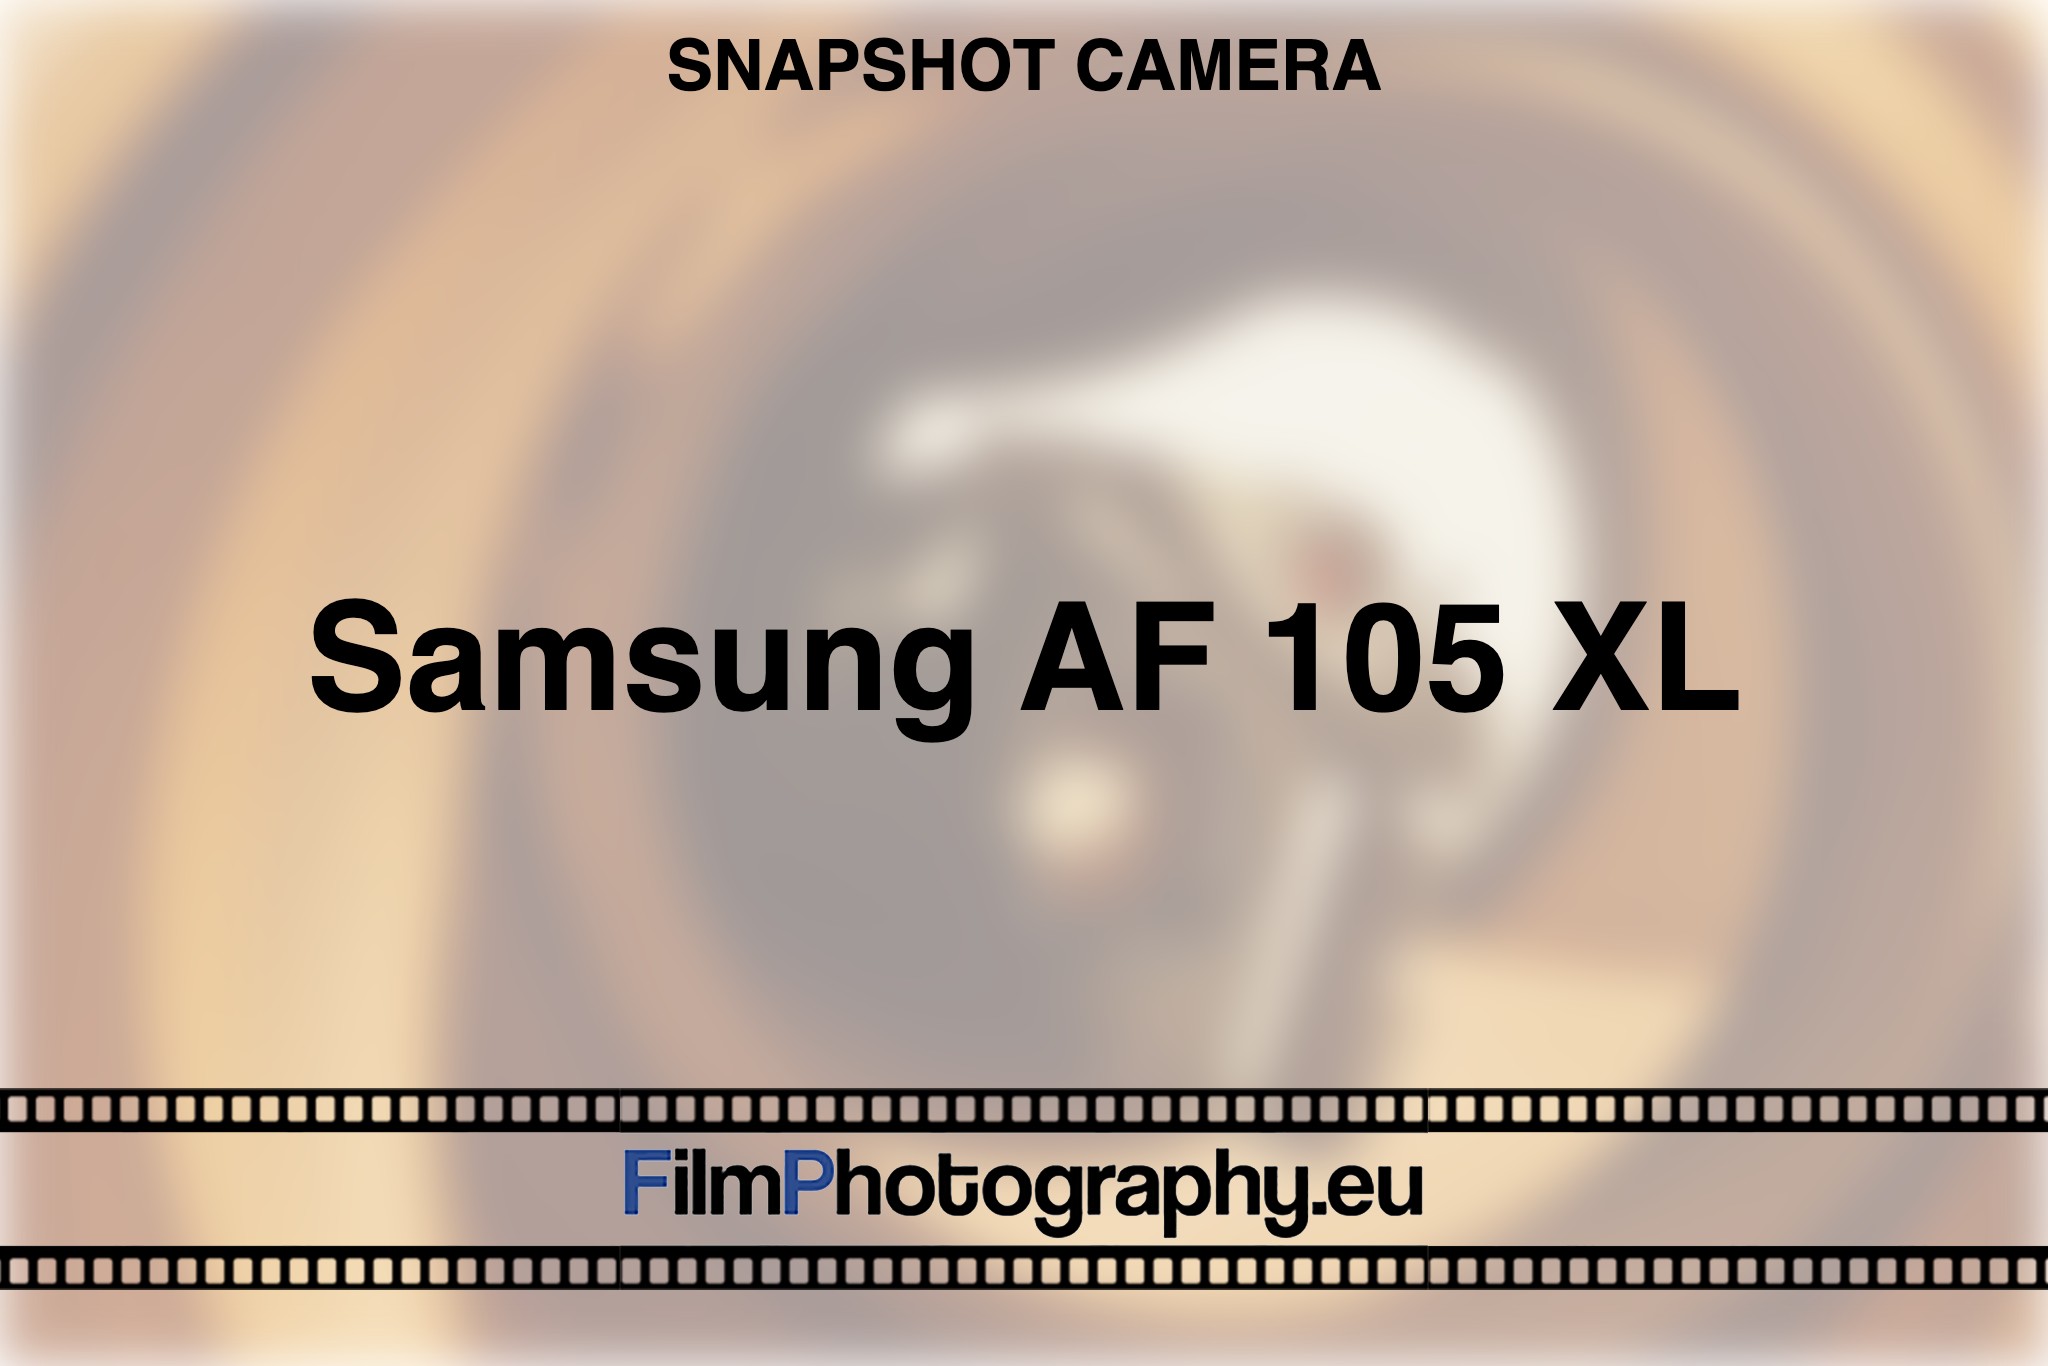 samsung-af-105-xl-snapshot-camera-bnv